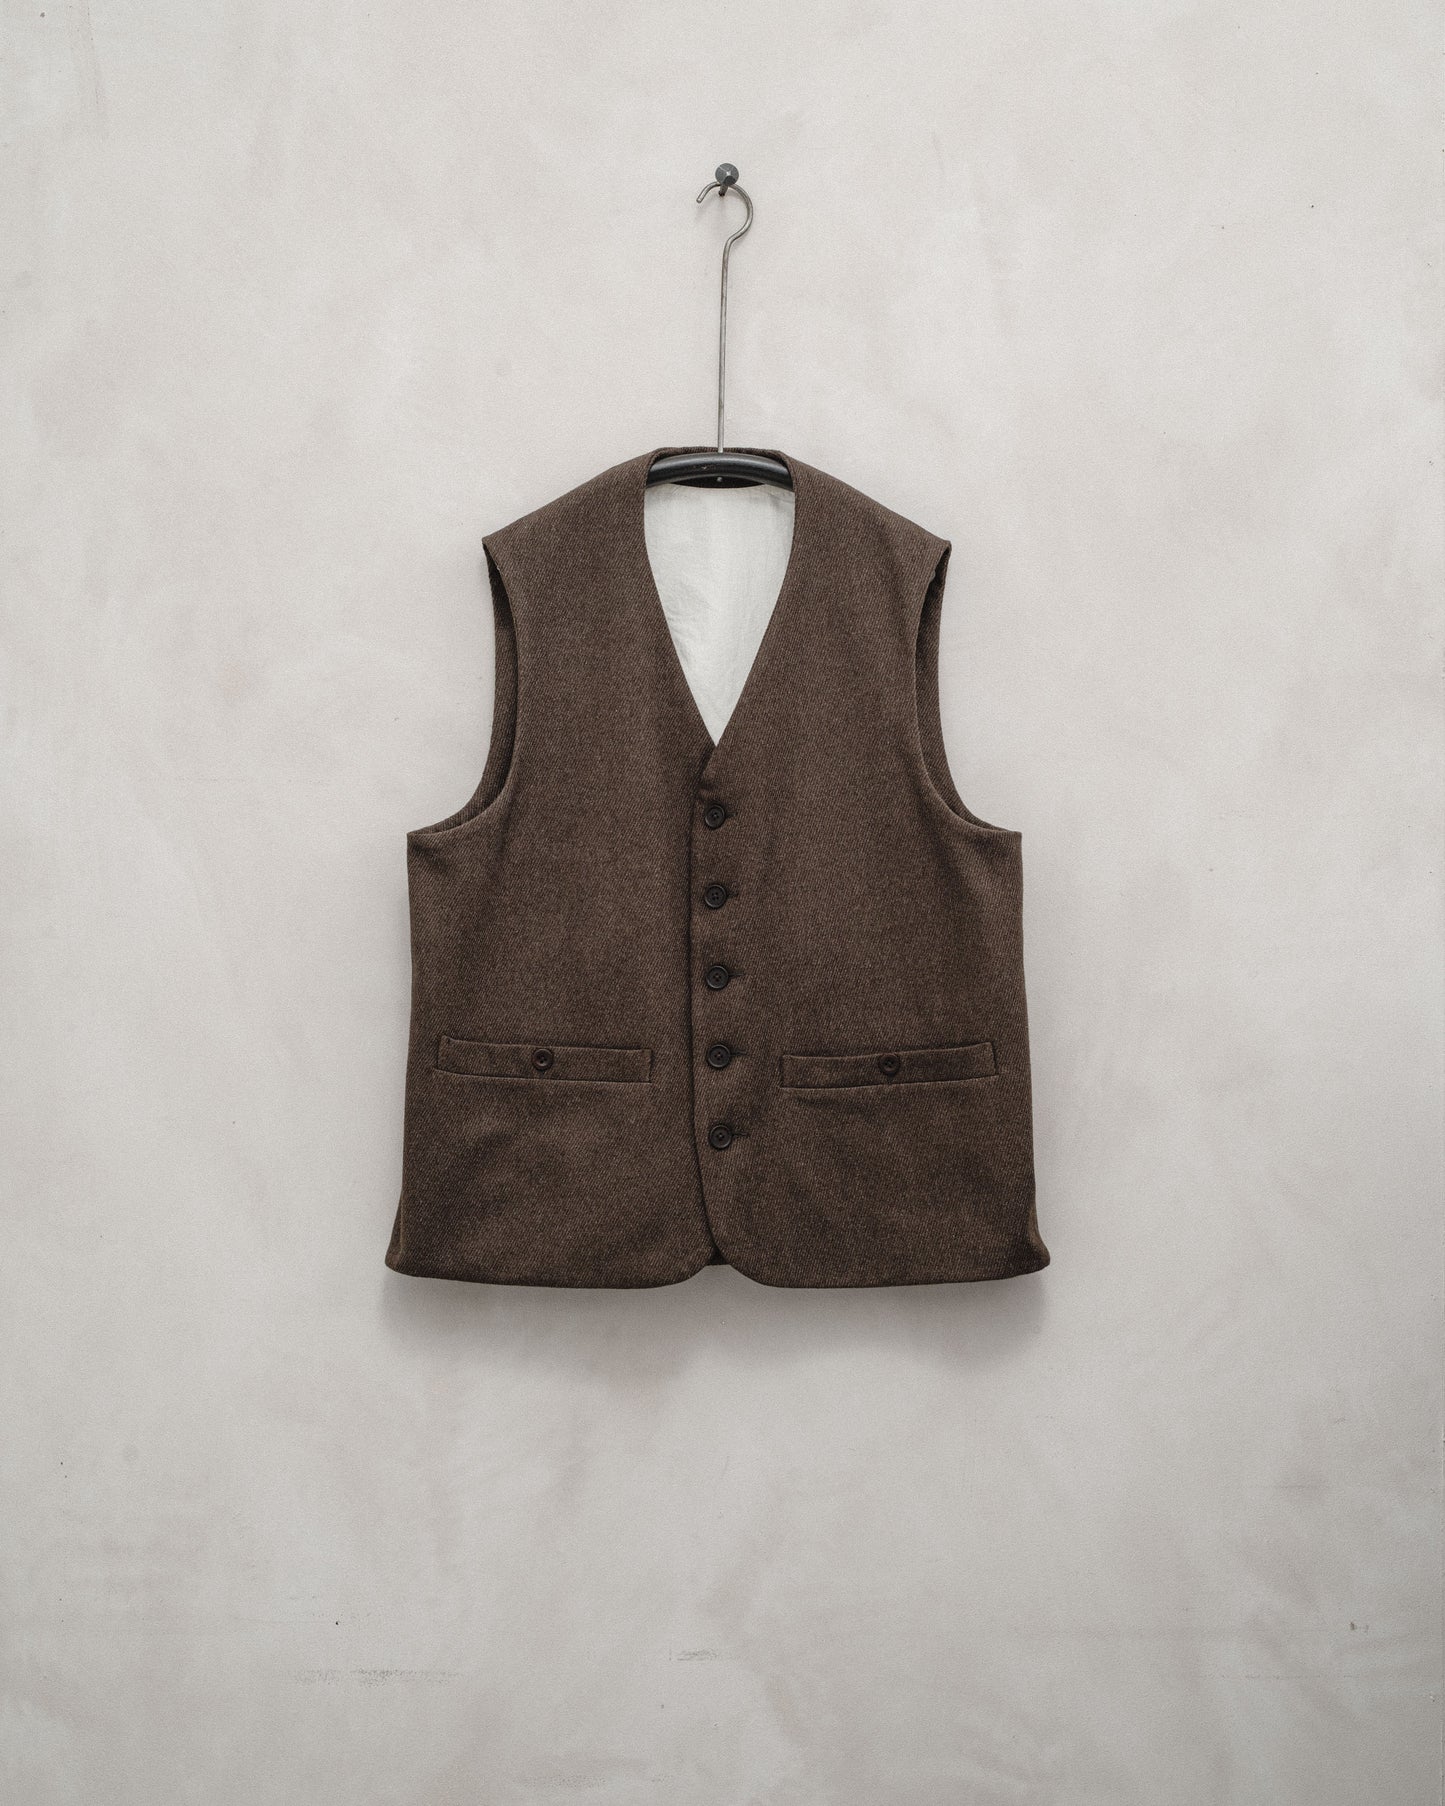 Welt Pocket Vest - Yarn Dyed Wool/Cotton Twill, Olive Melange